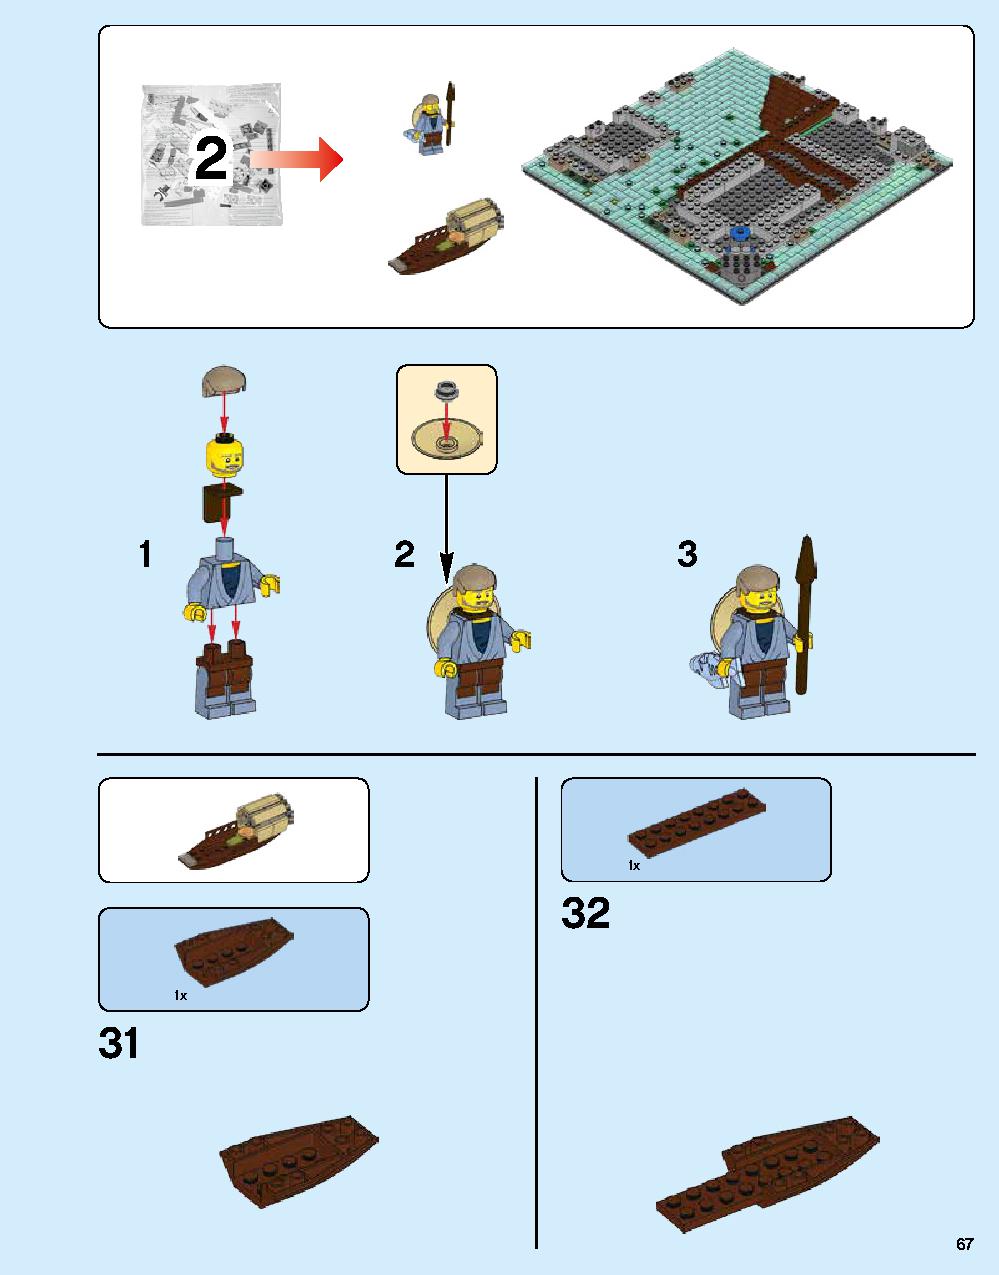 ニンジャゴー シティ 70620 レゴの商品情報 レゴの説明書・組立方法 67 page